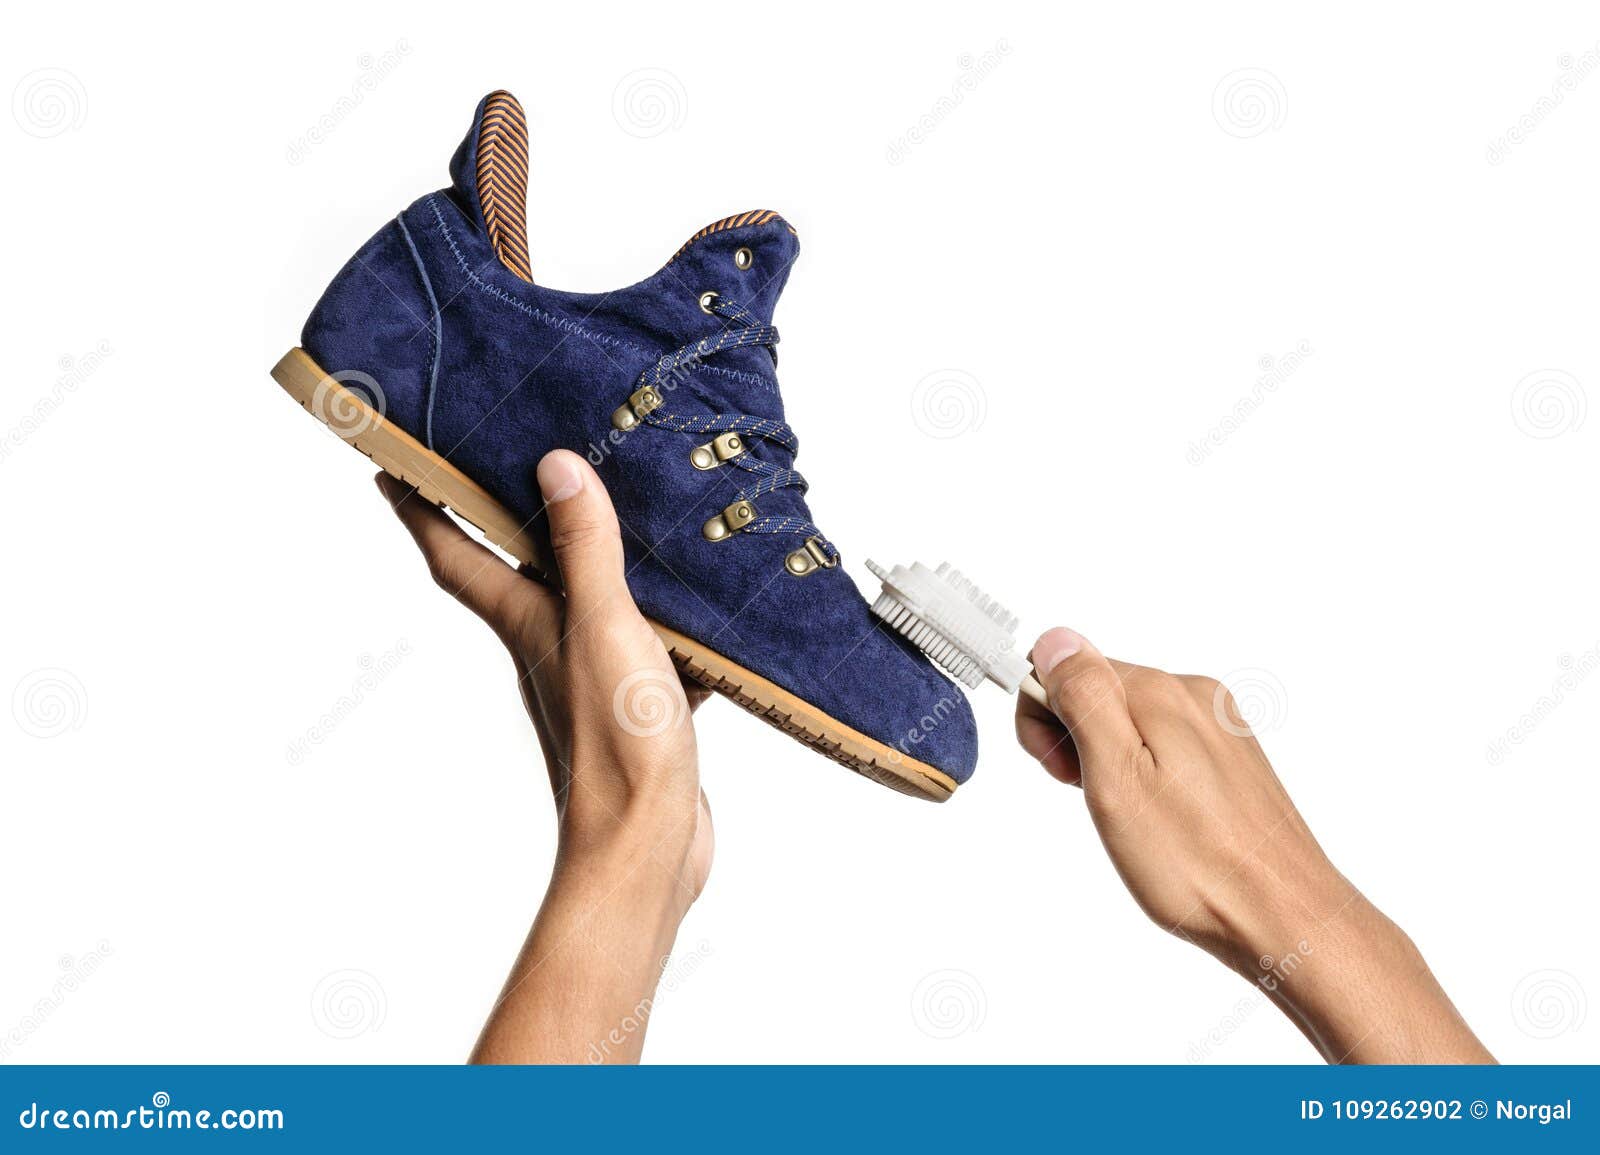 How To Clean Suede Sneakers? - Sportskeeda Stories